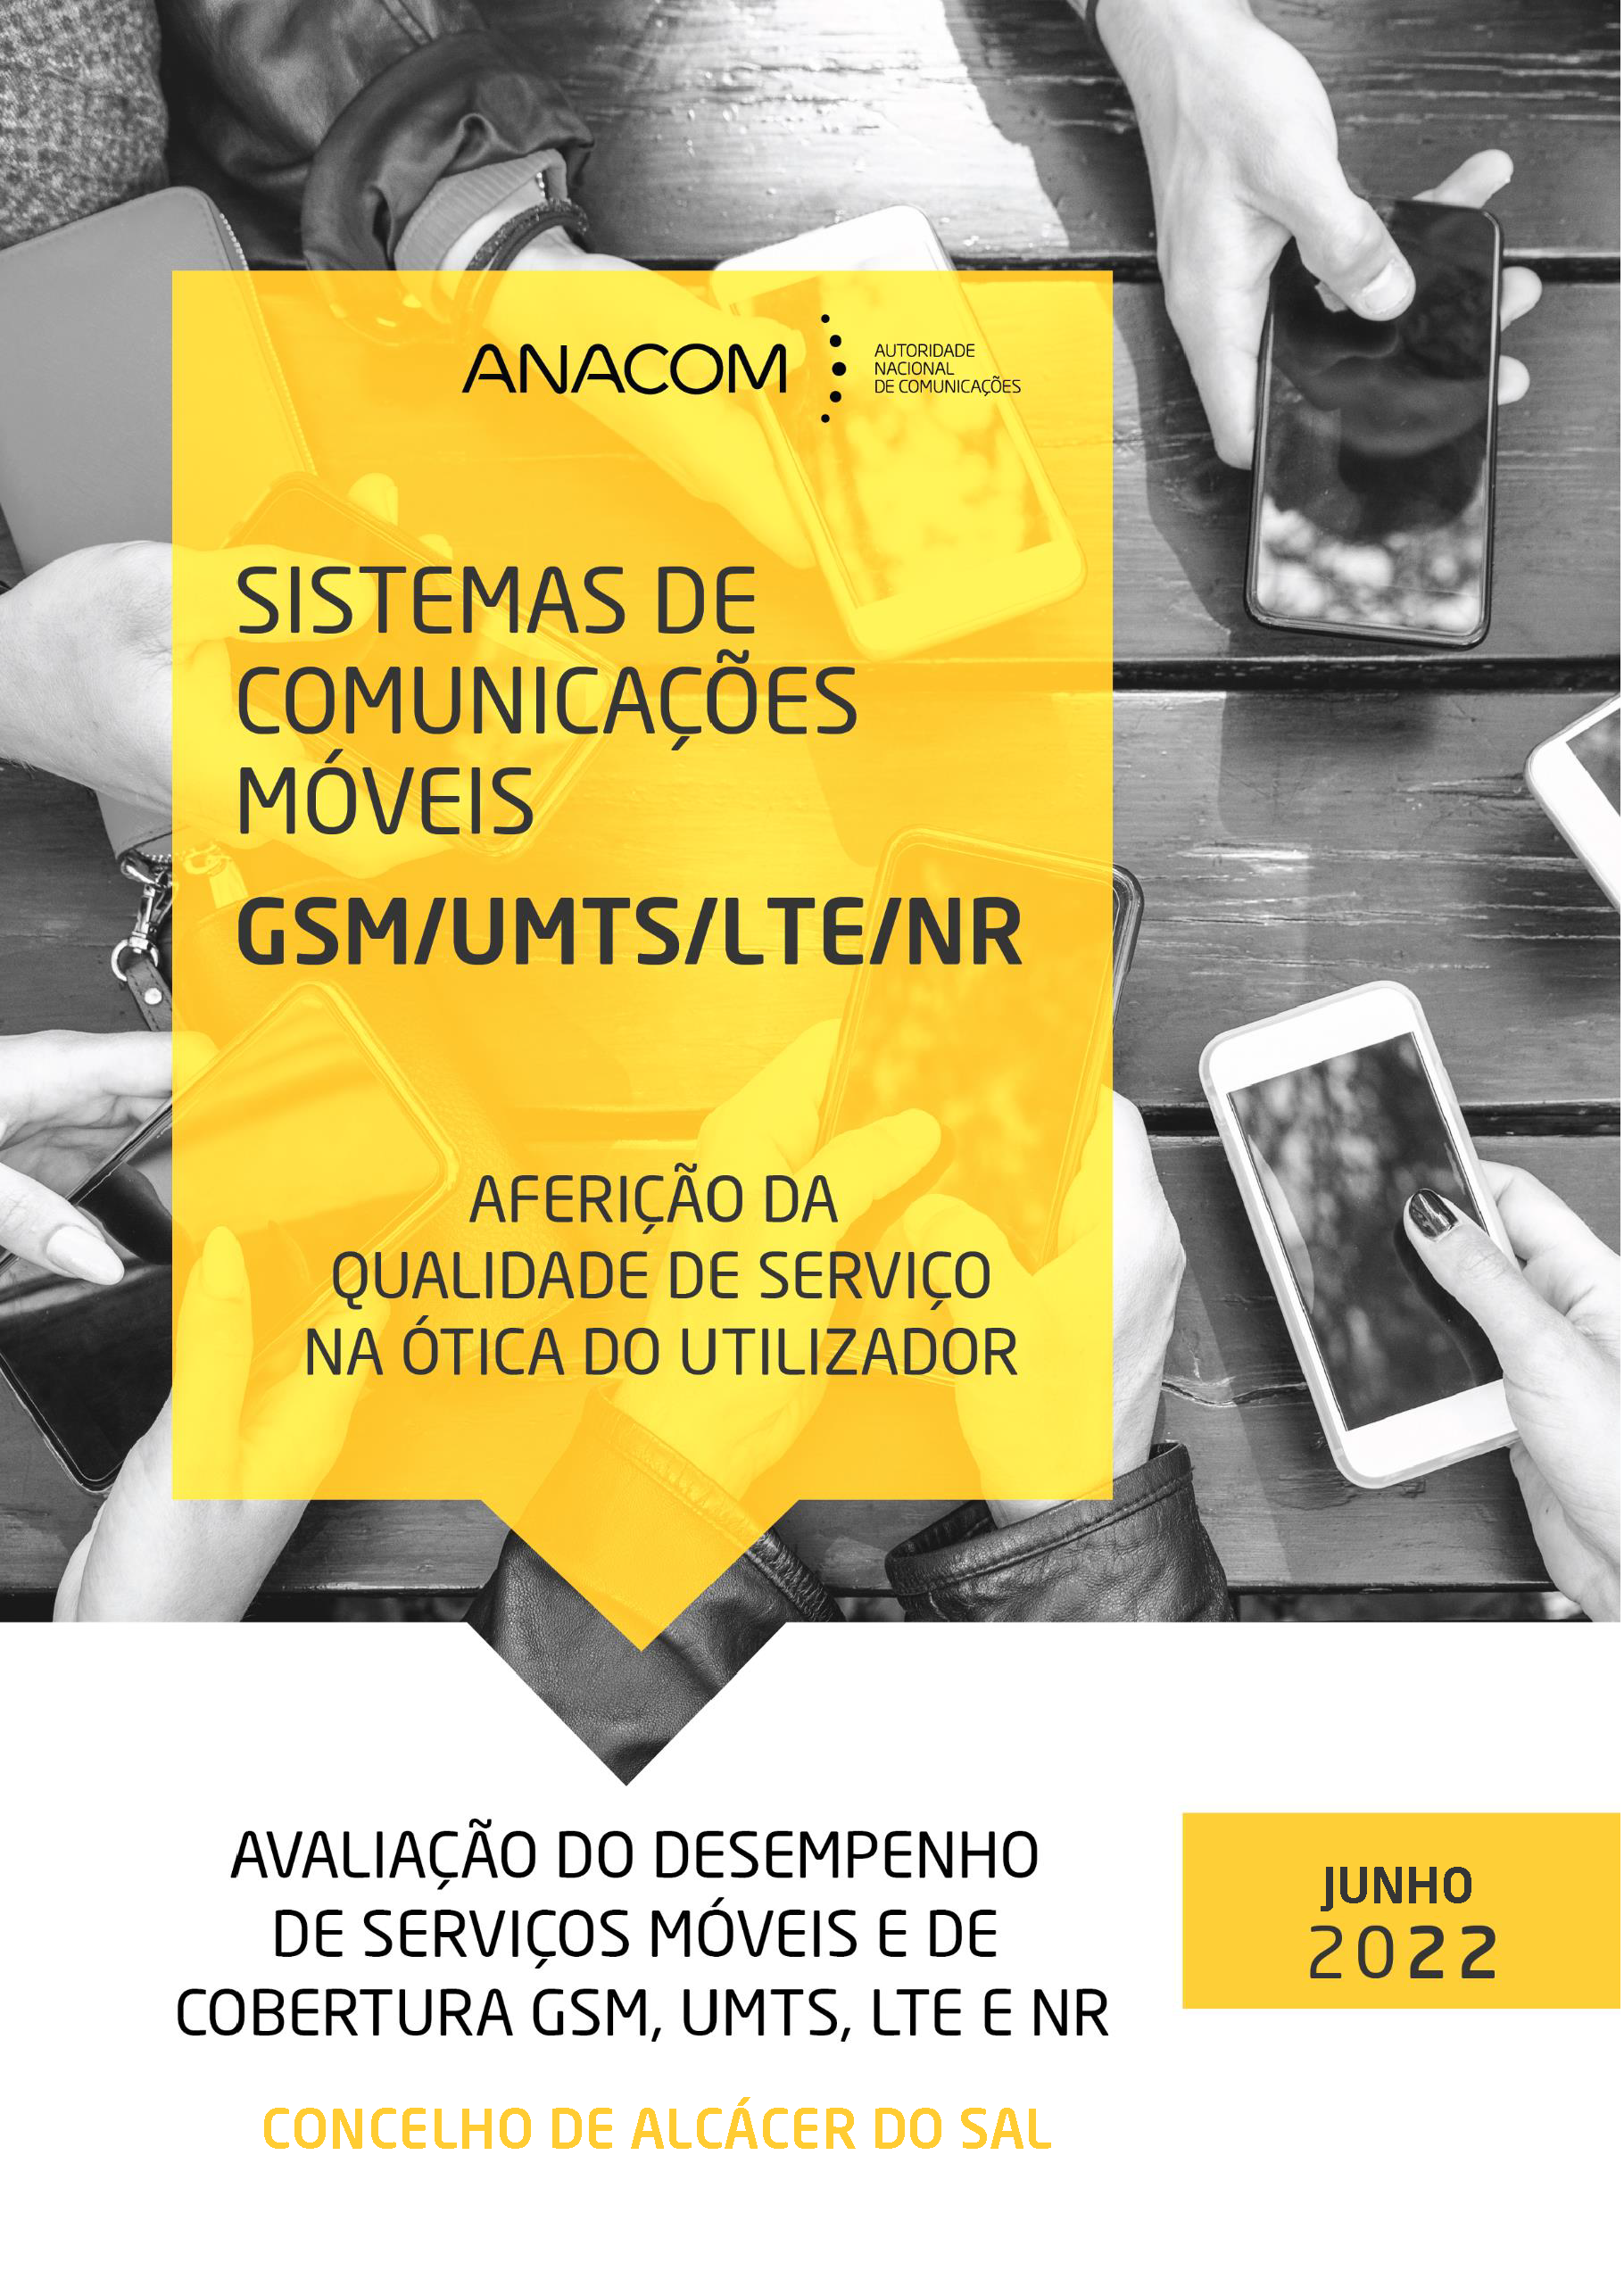 Avaliação do desempenho de serviços móveis e de cobertura GSM, UMTS, LTE e NR no Concelho de Alcácer do Sal